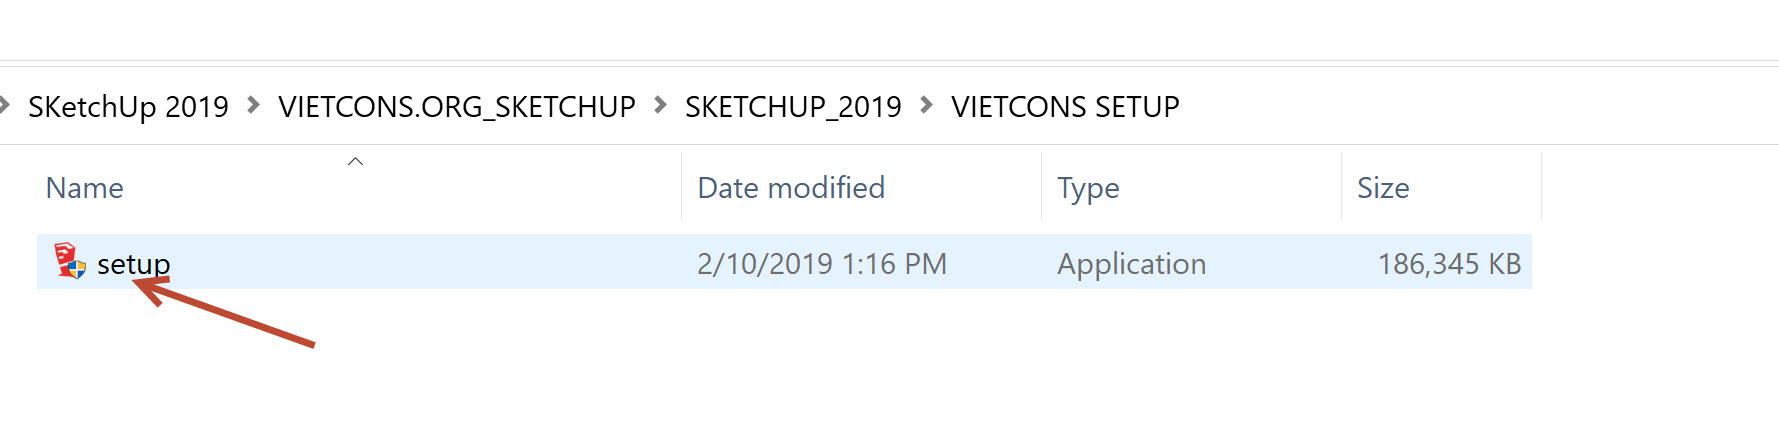 cài đặt file sketchup 2019 full crack